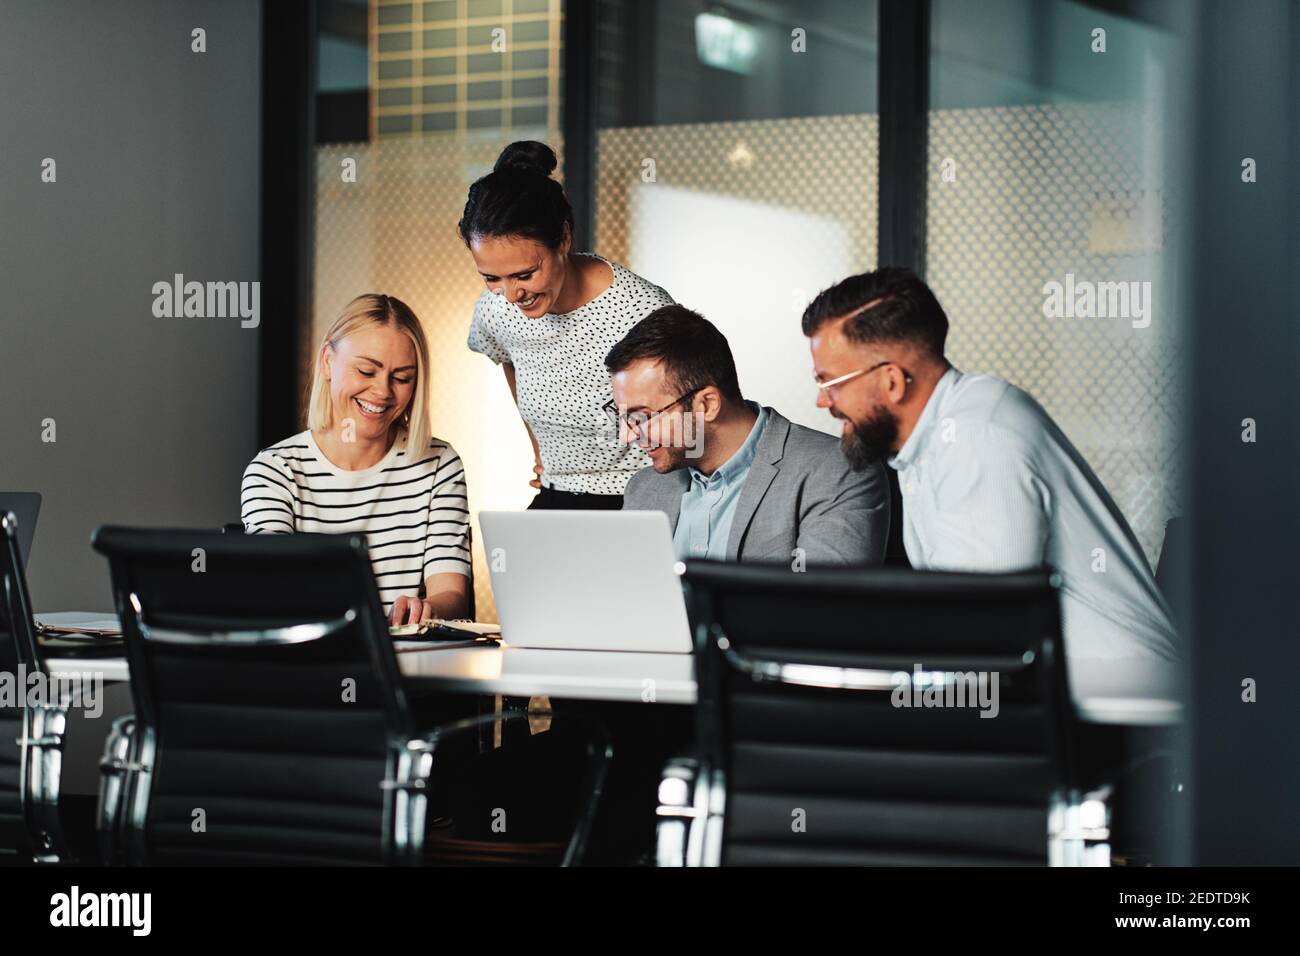 Gruppo di uomini d'affari sorridenti che lavorano su un computer portatile e discutono lavori di documentazione a un tavolo durante una riunione nella sala riunioni di un ufficio Foto Stock